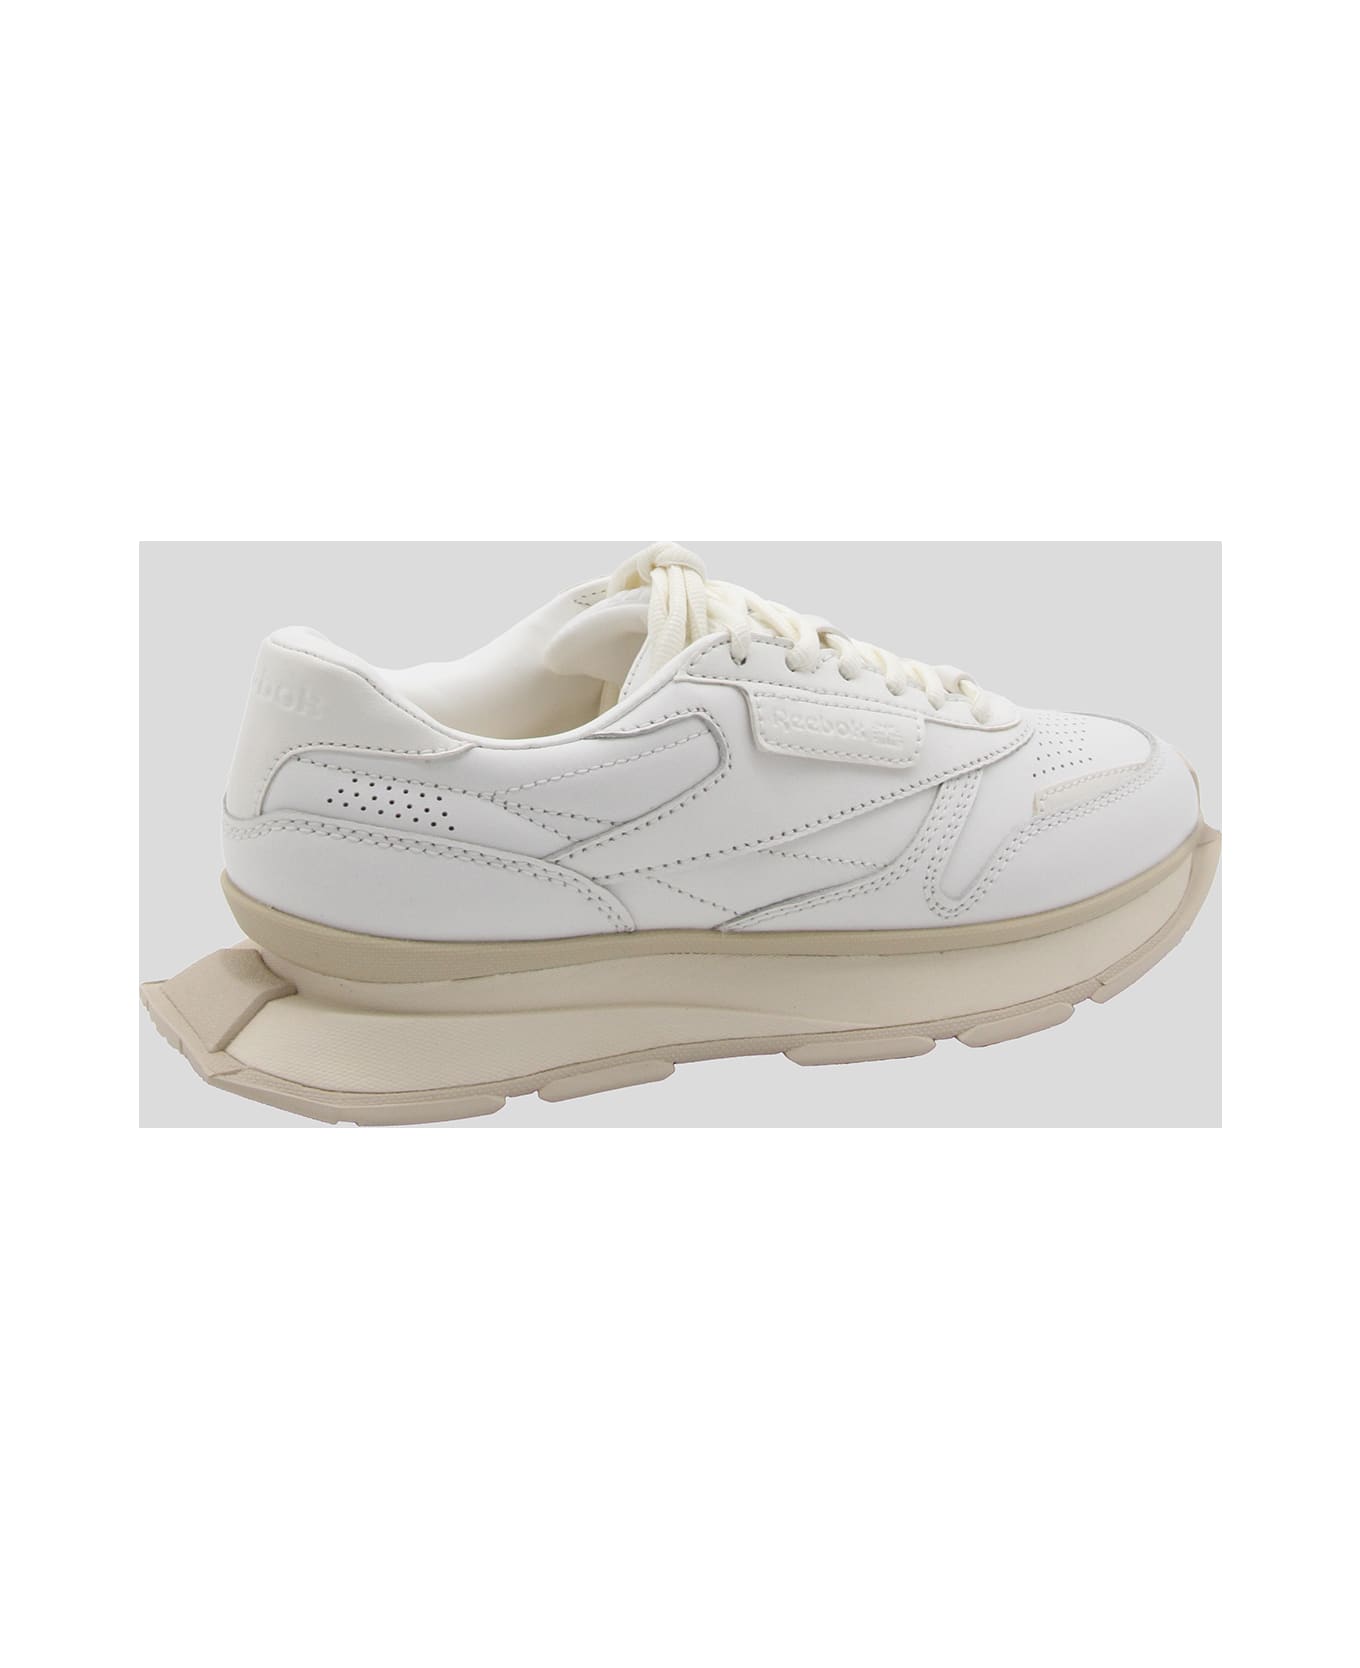 Reebok White Leather Ltd - White